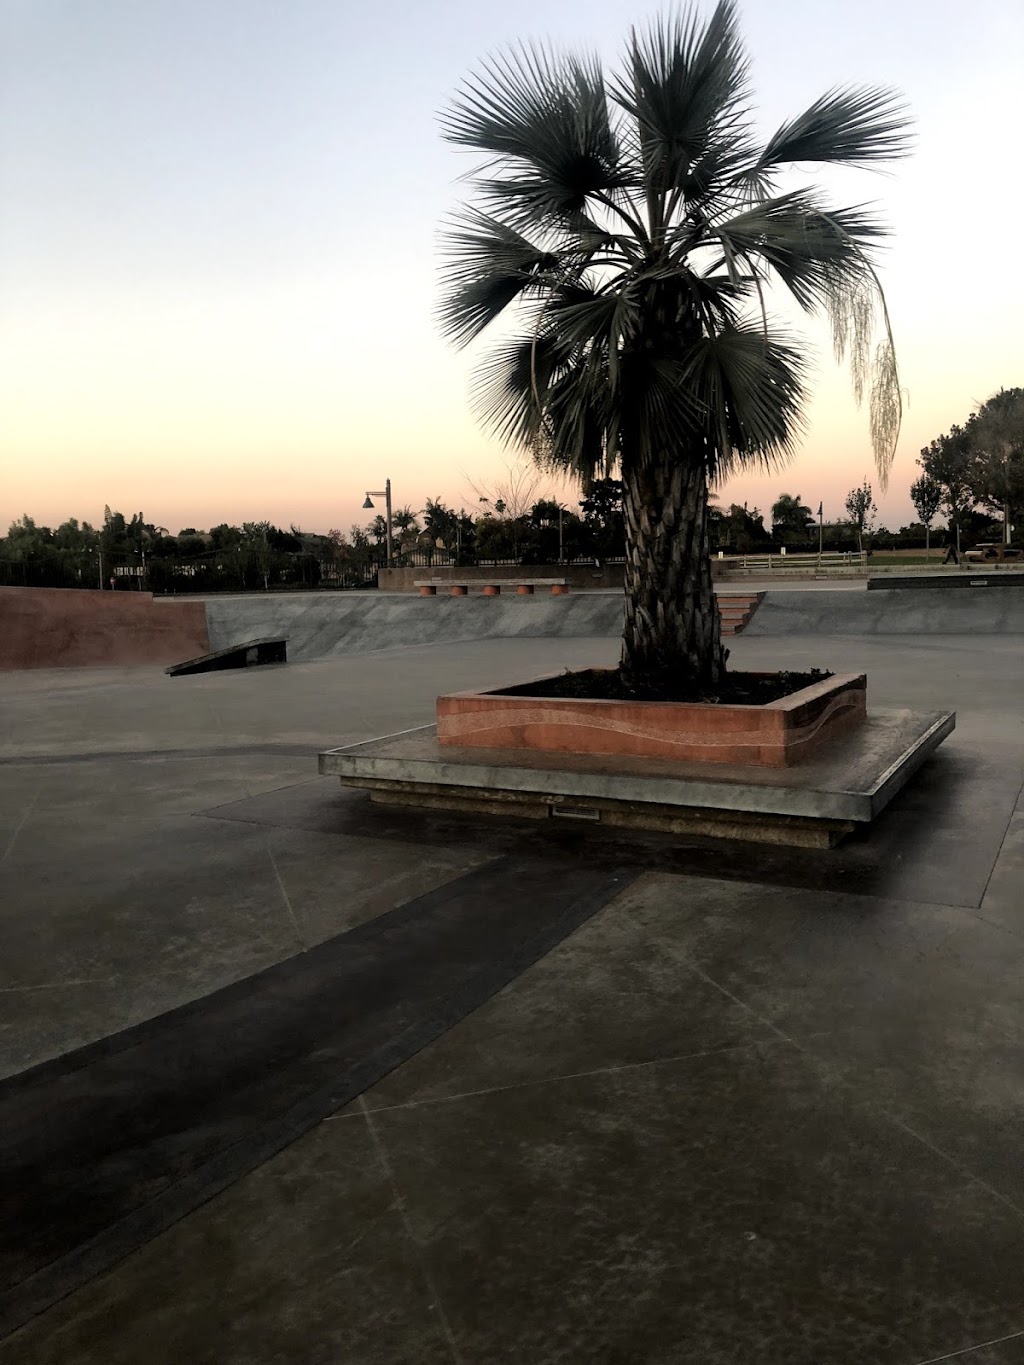 Encinitas Skate Park, (Poods) | 429 Santa Fe Dr, Encinitas, CA 92024 | Phone: (818) 675-8149